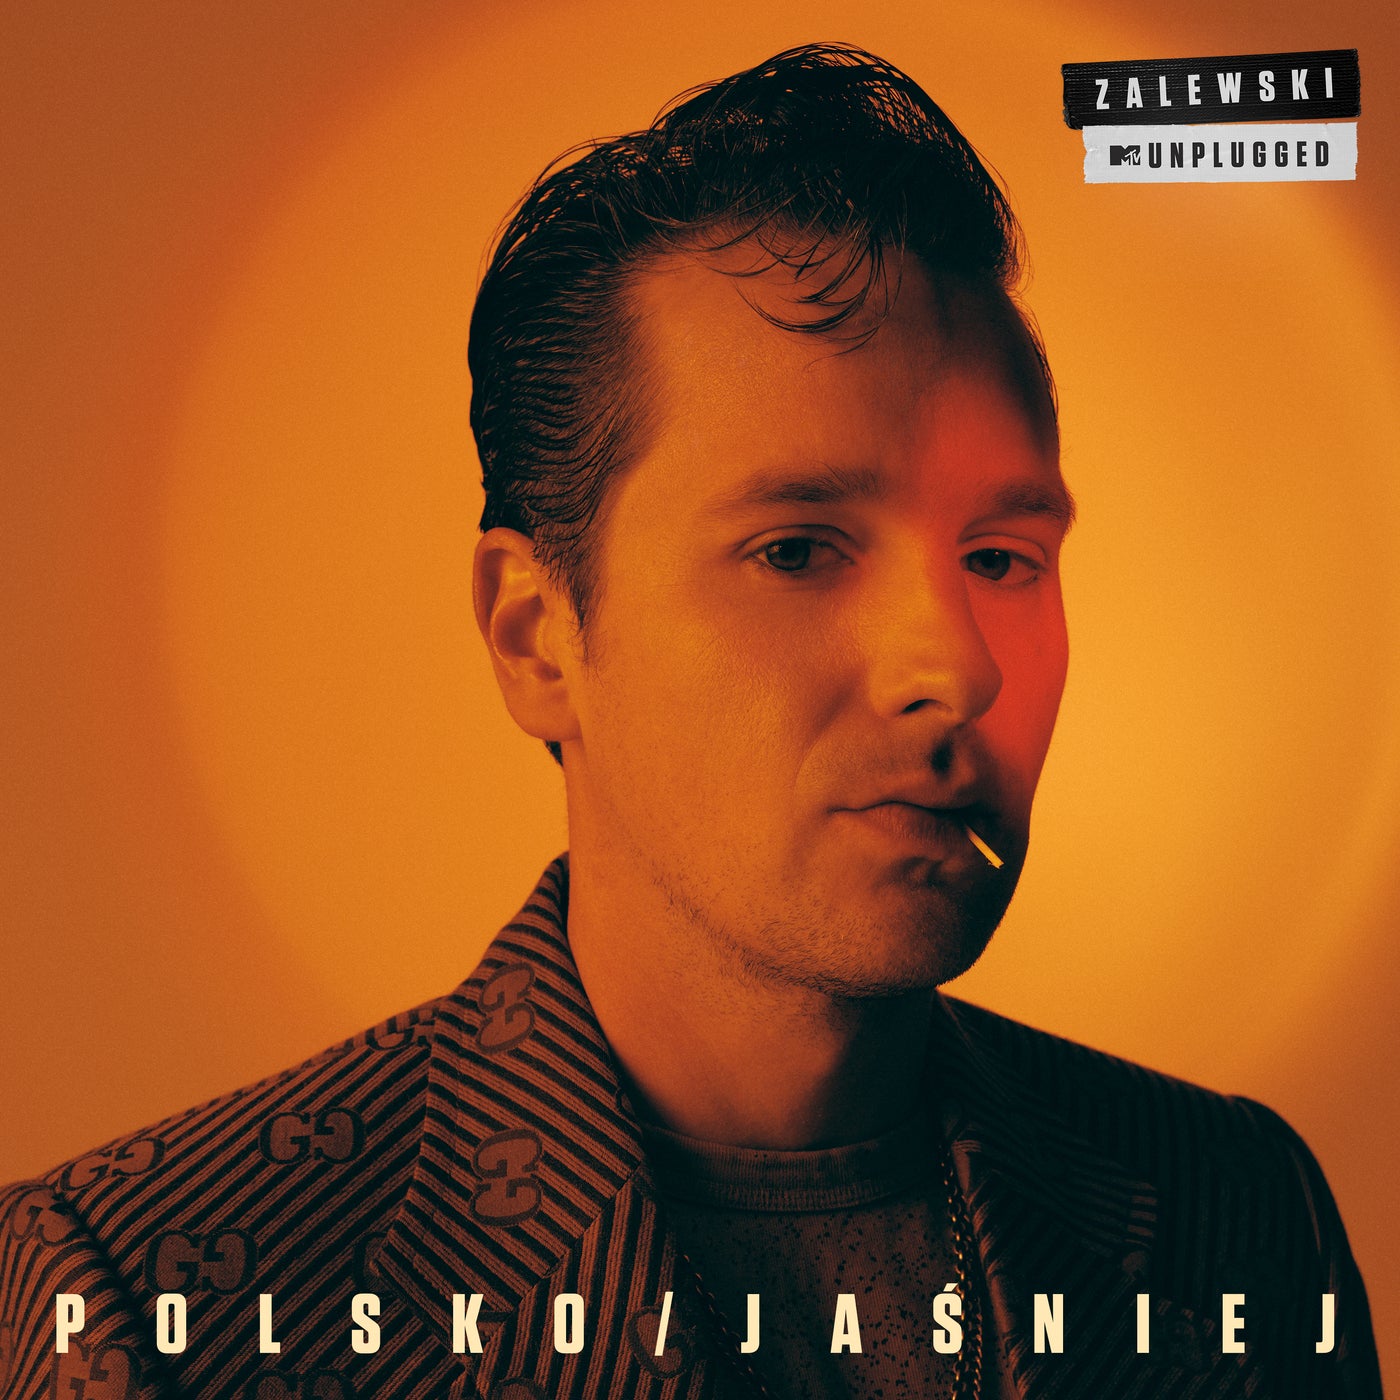 Polsko / Jaśniej - Live